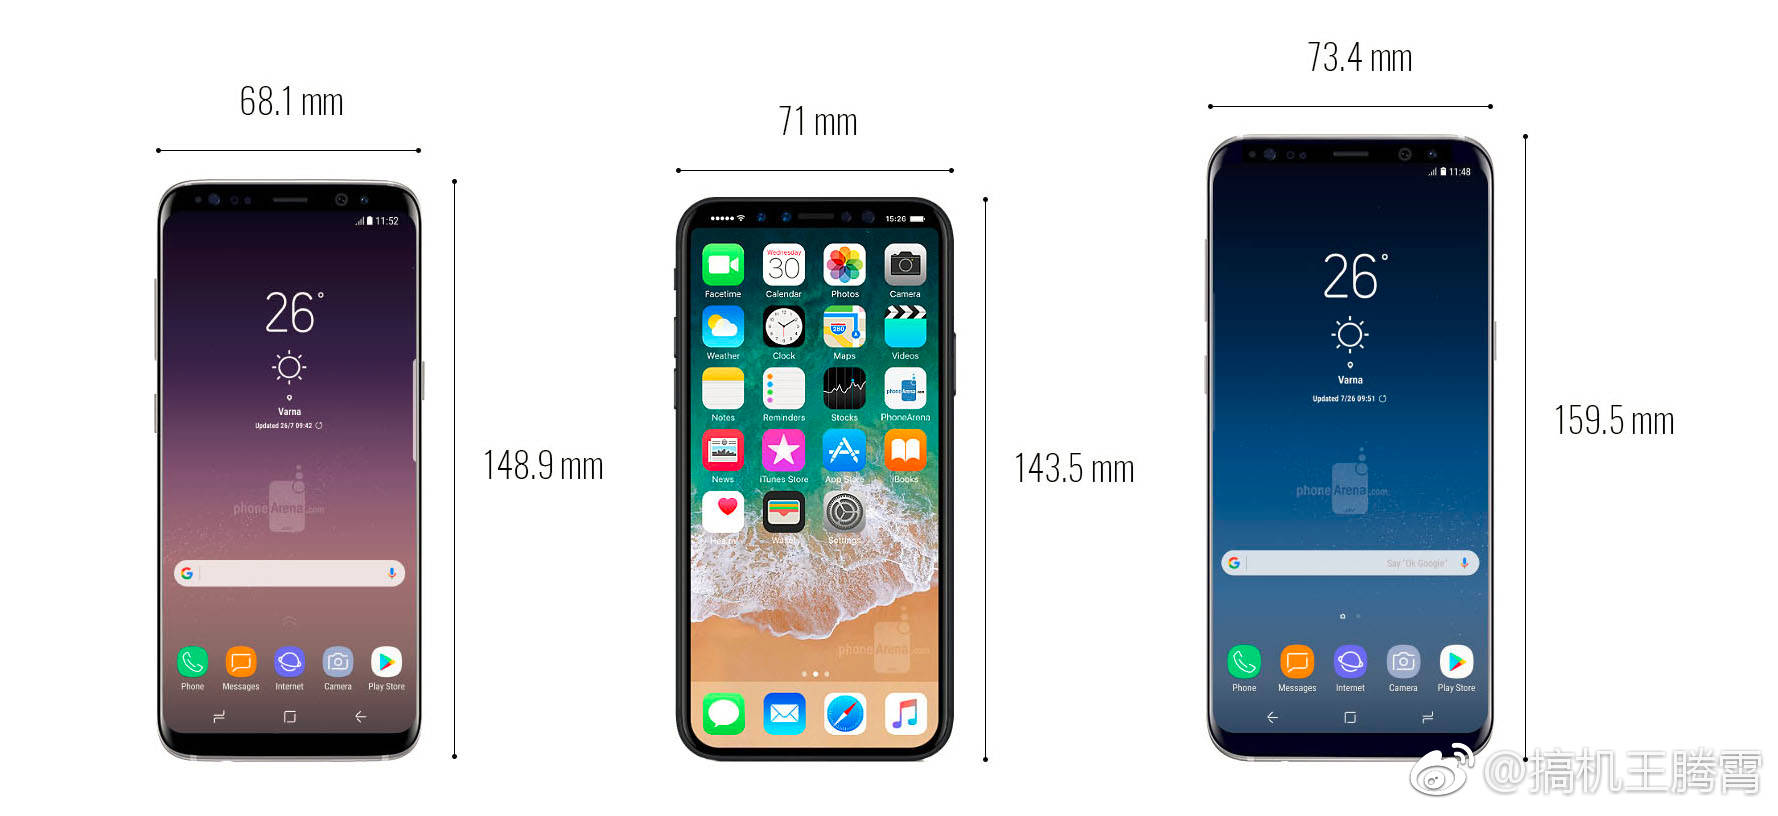 iphone 8整机尺寸遭泄露,大小刚刚好!